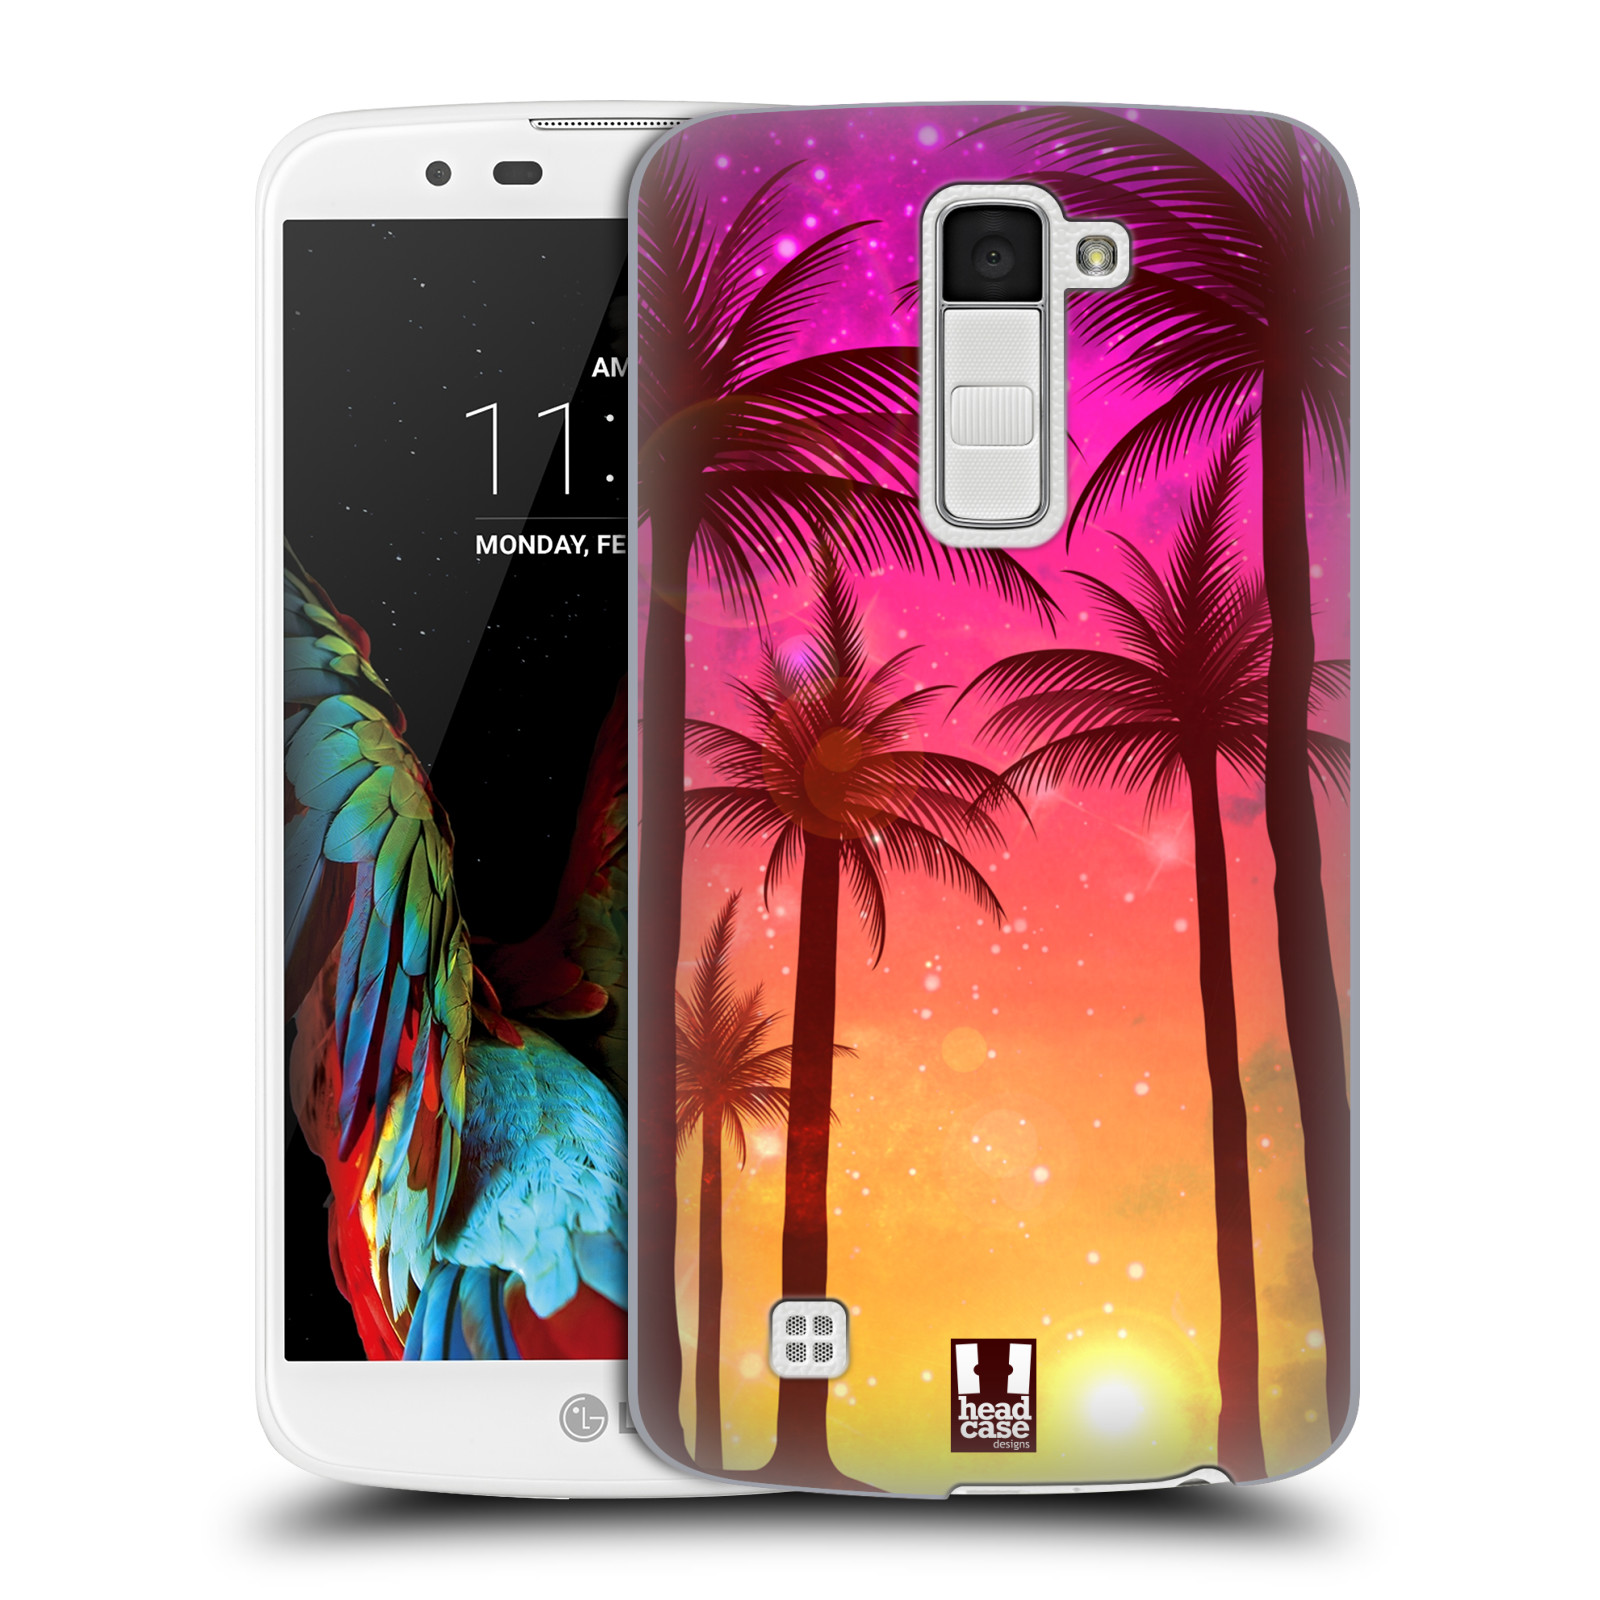 HEAD CASE plastový obal na mobil LG K10 vzor Kreslený motiv silueta moře a palmy RŮŽOVÁ